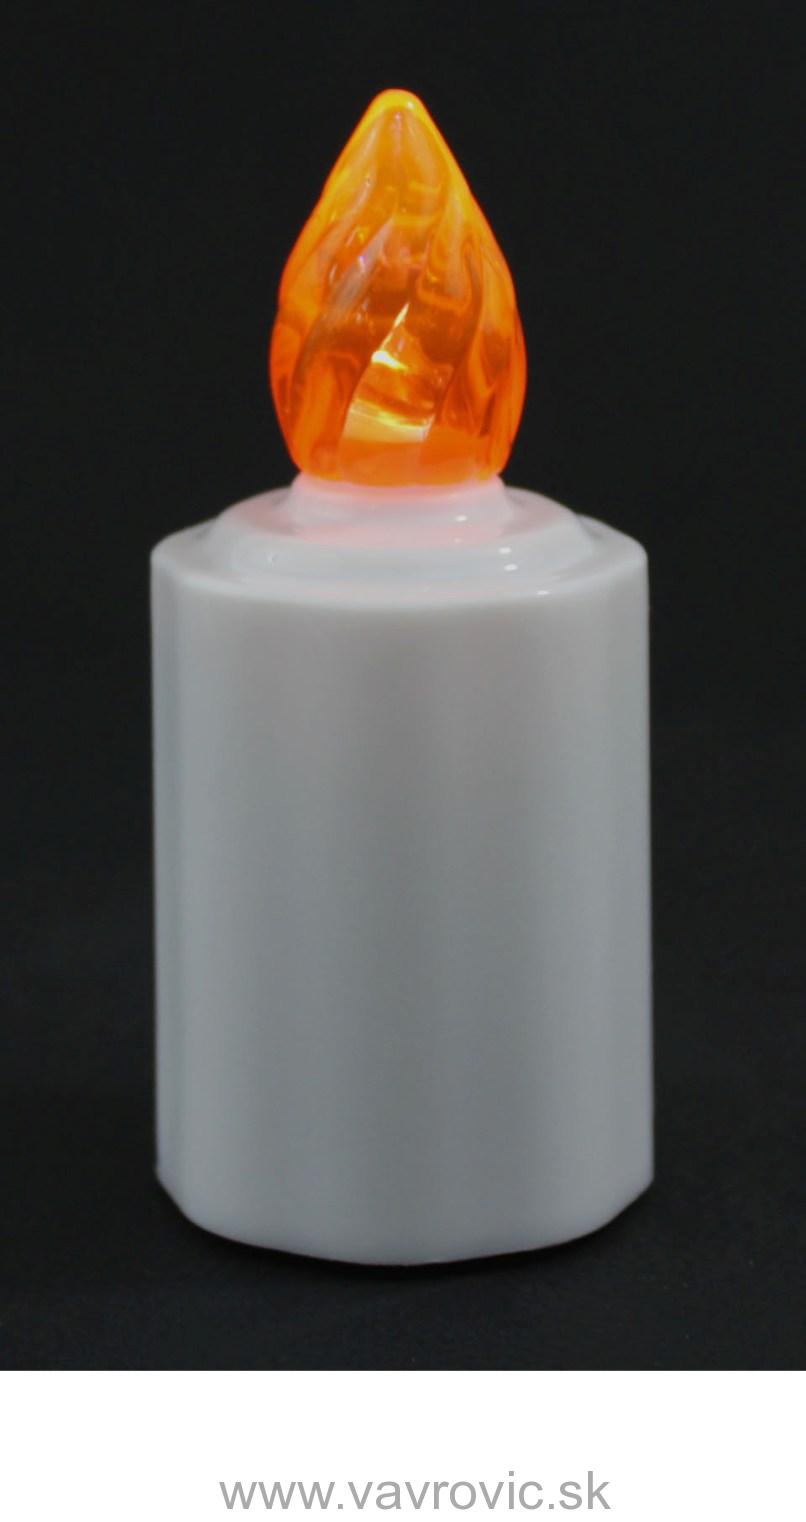 LED náhrobný kahanček ZE1 - oranžový